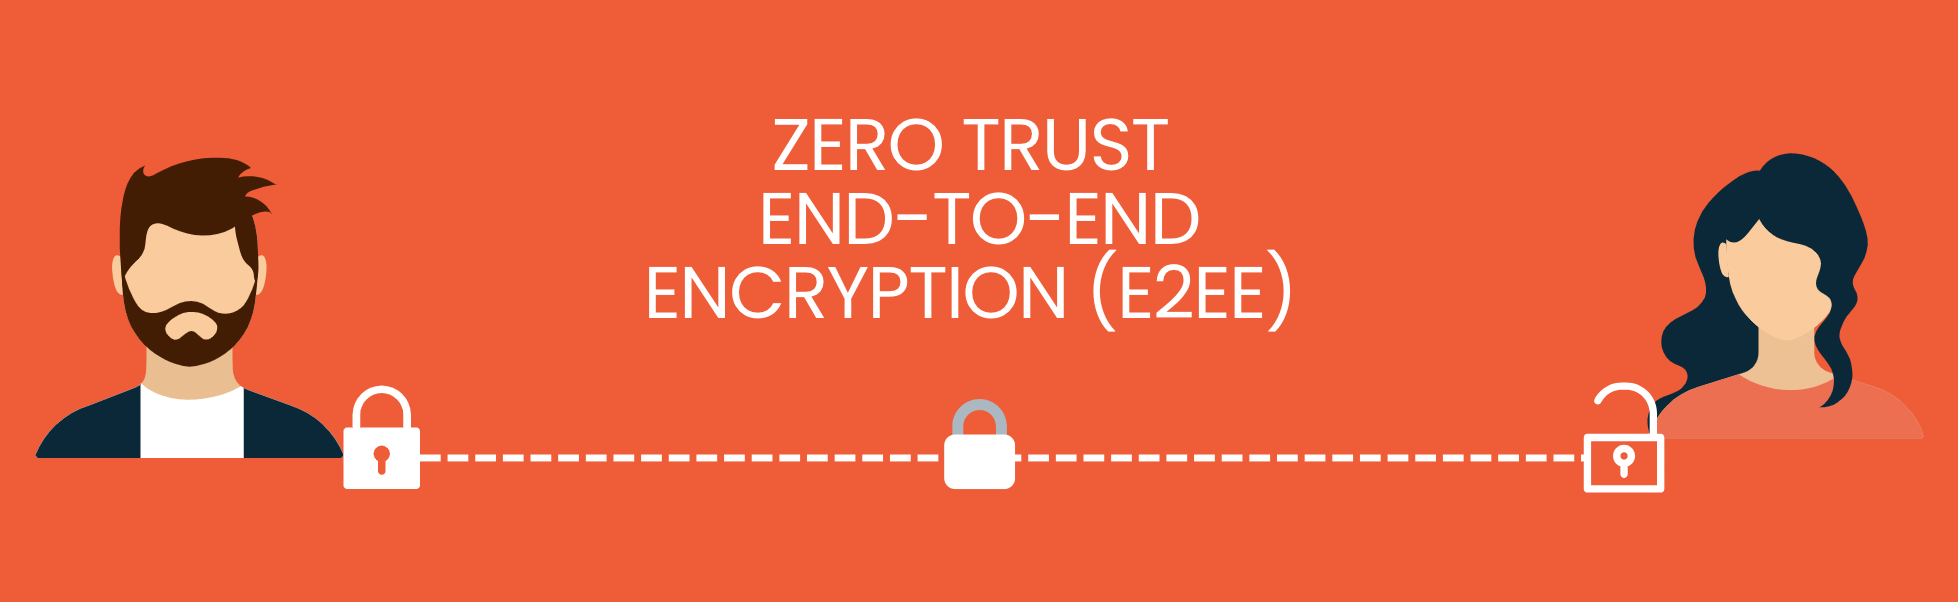 Trust Broker Security is Zero Trust Security